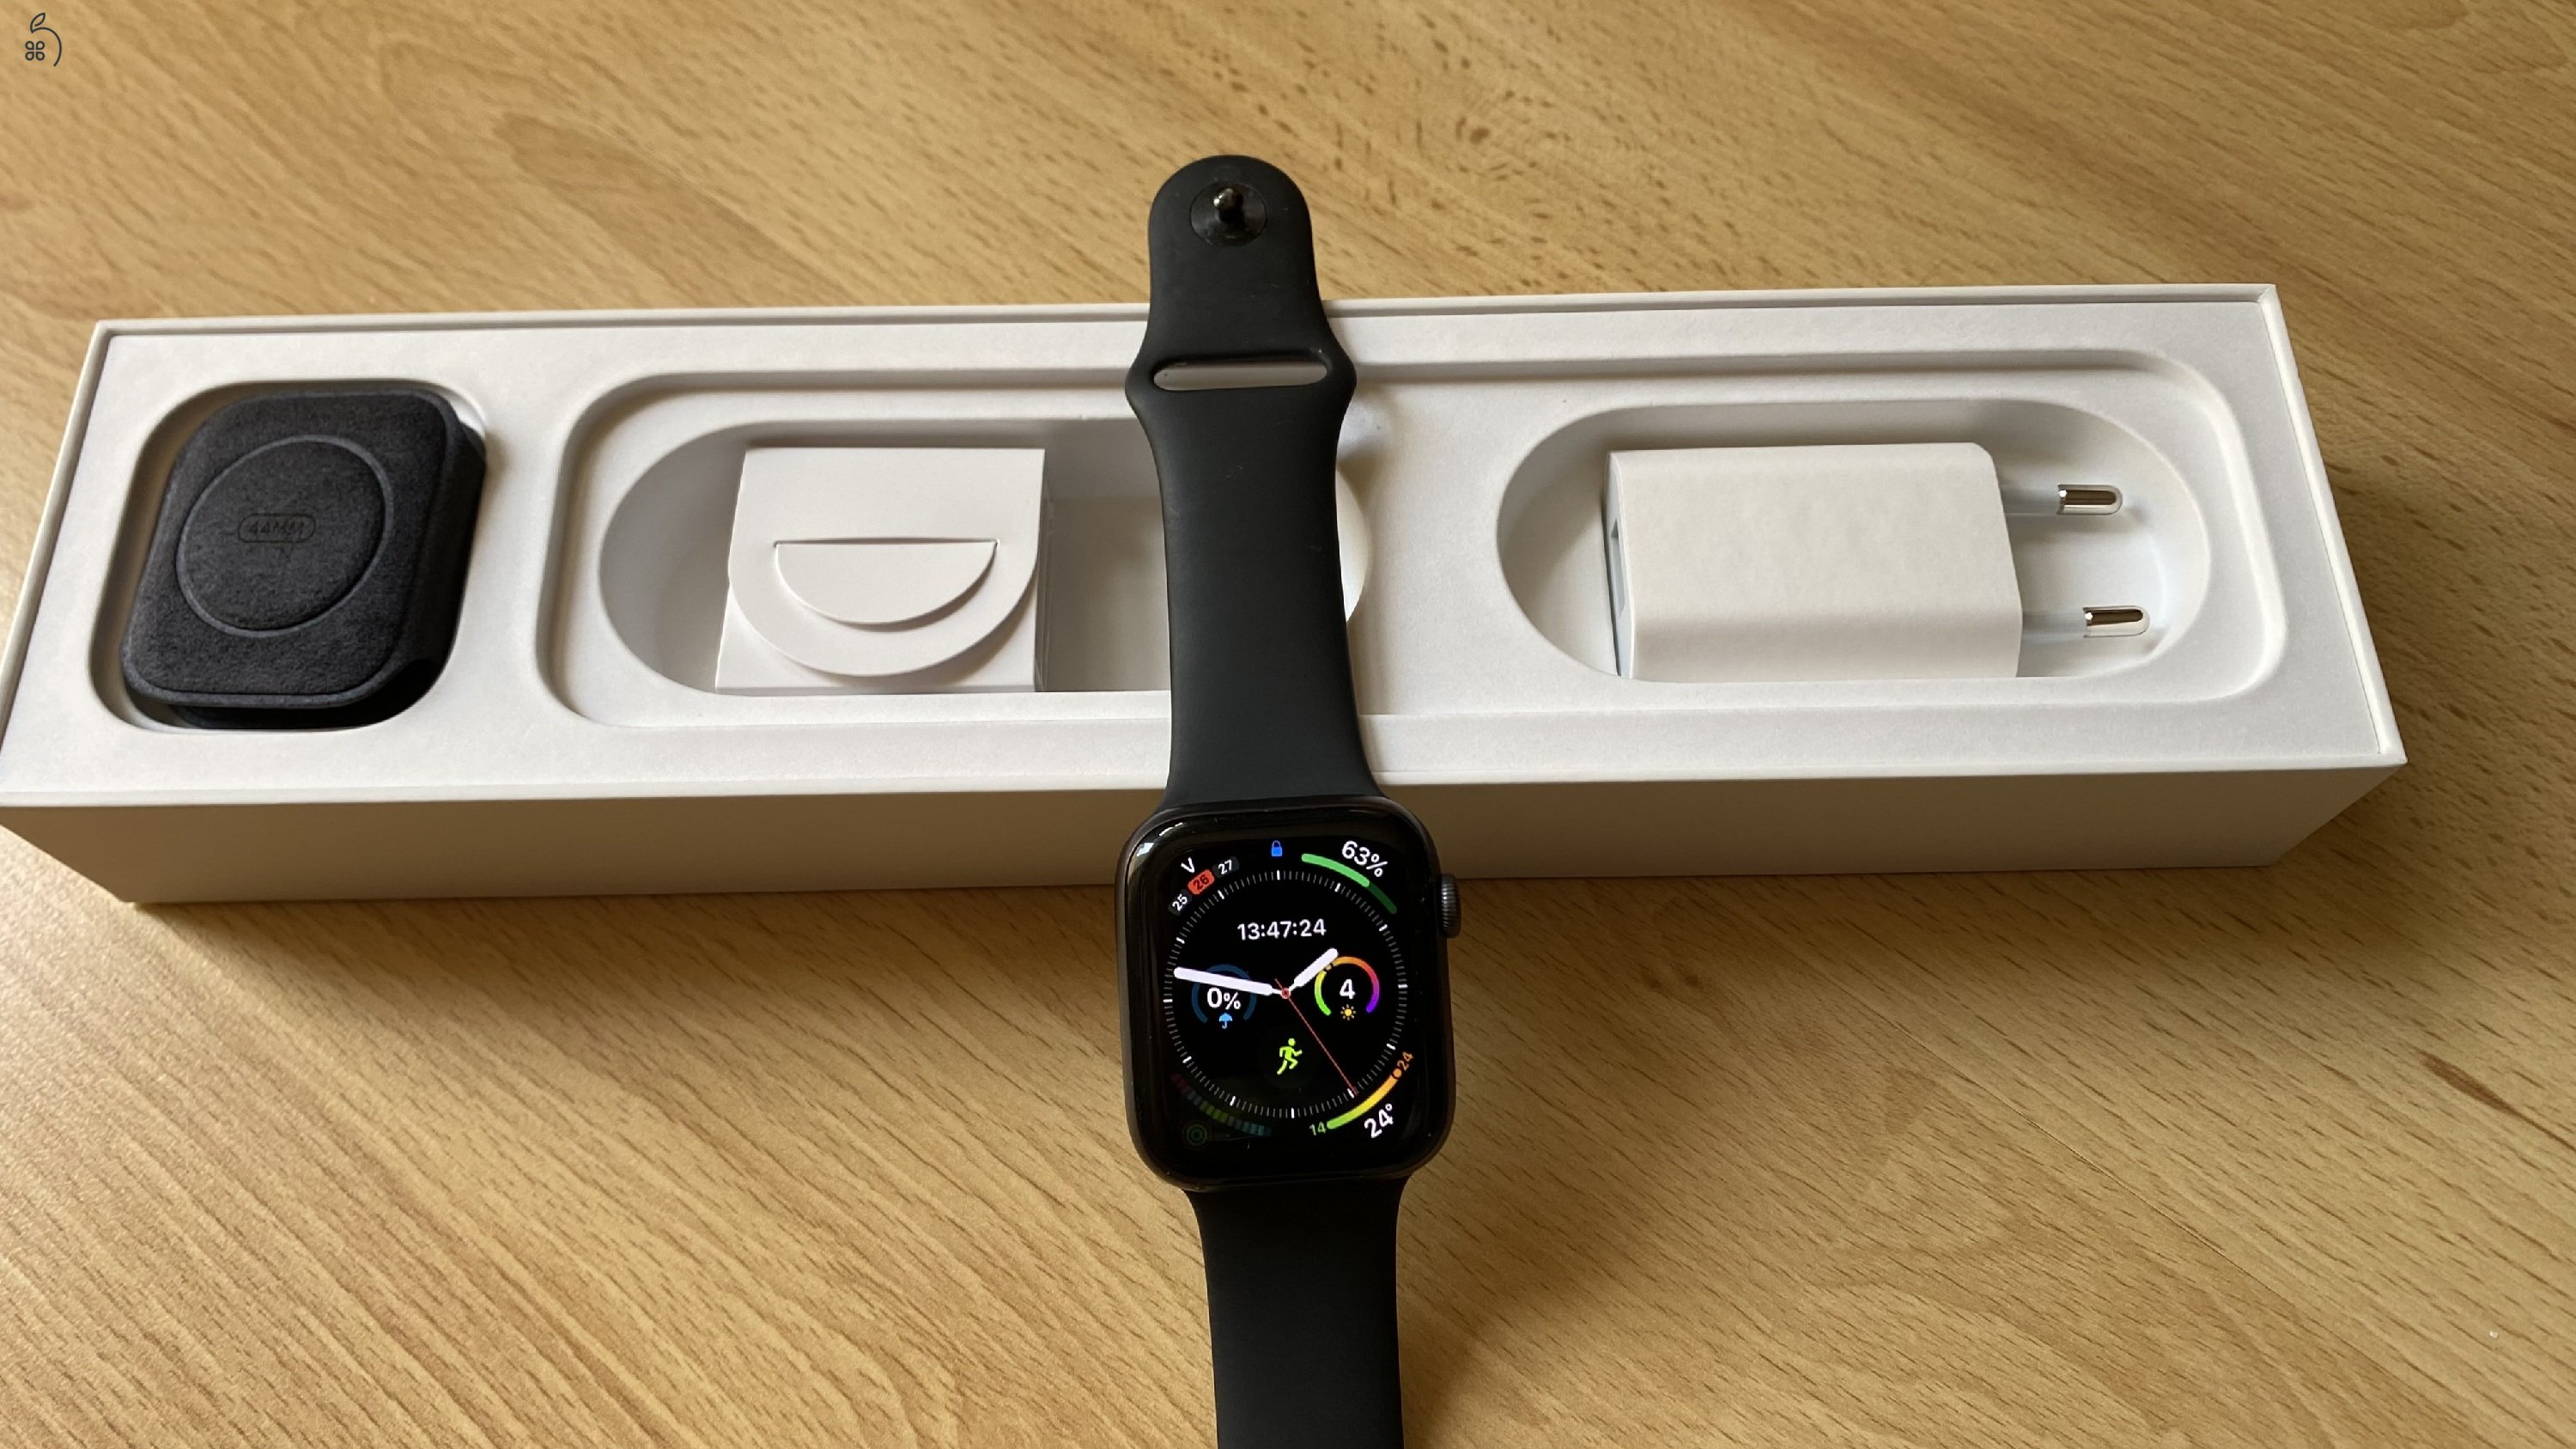 Apple Watch S5 Cellular aluminium szép állapot